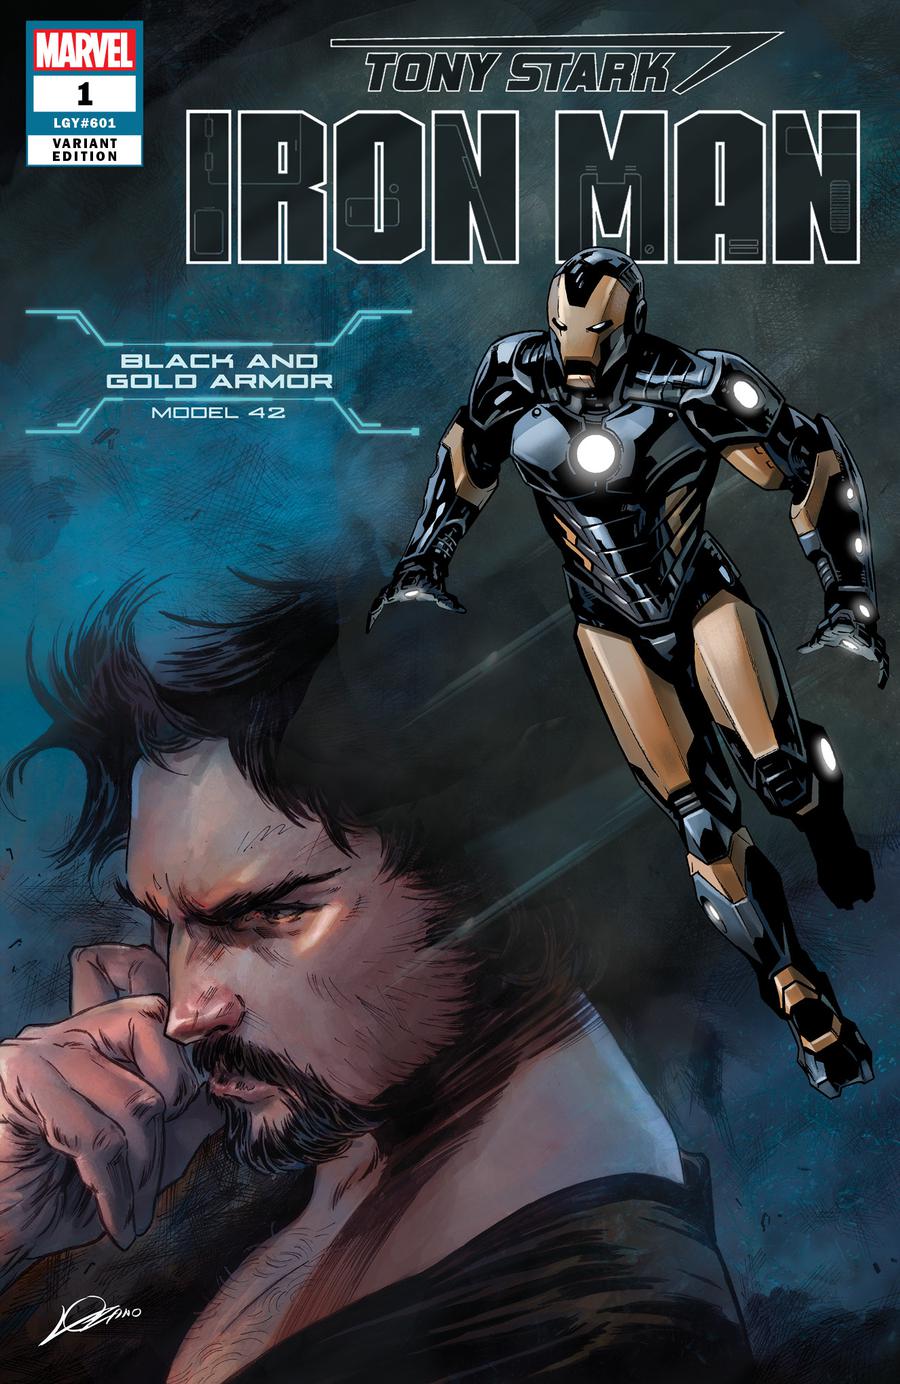 Tony Stark Iron Man #1 Model 42 Black and Gold Armor Edition (Lozano) [2018]